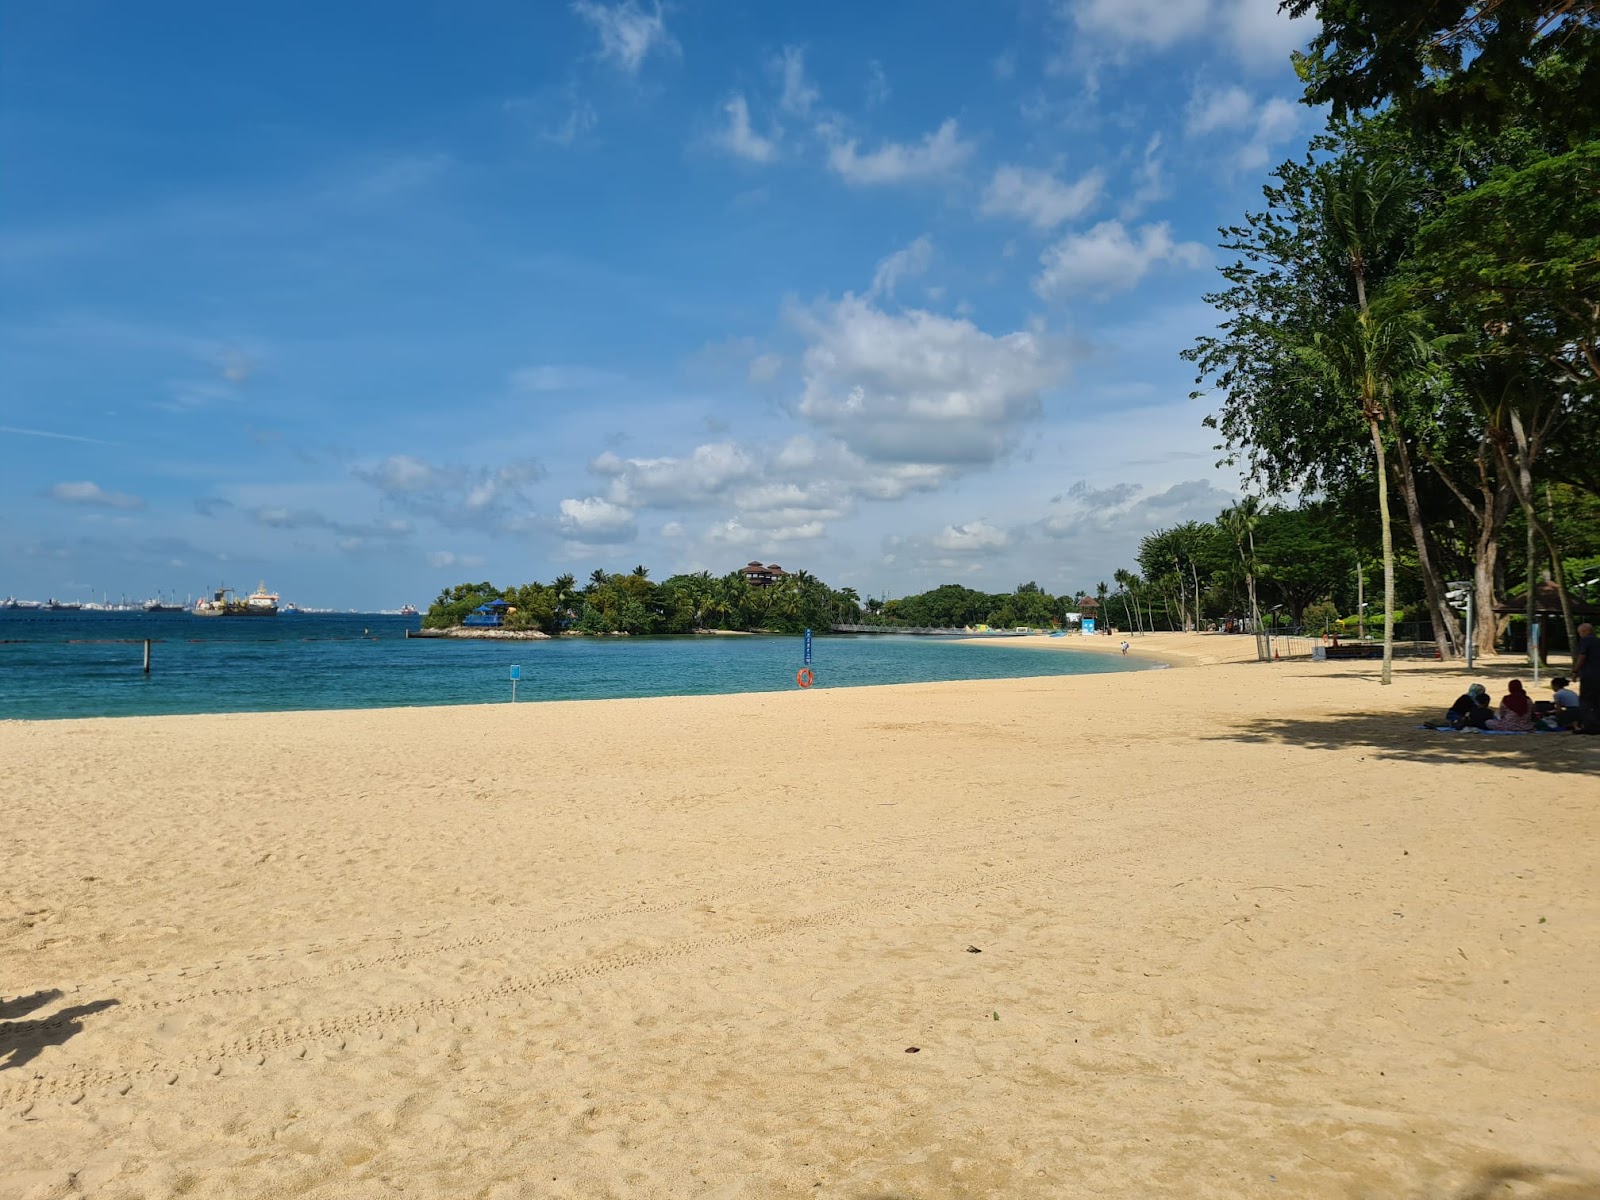 Palawan Beach'in fotoğrafı çok temiz temizlik seviyesi ile